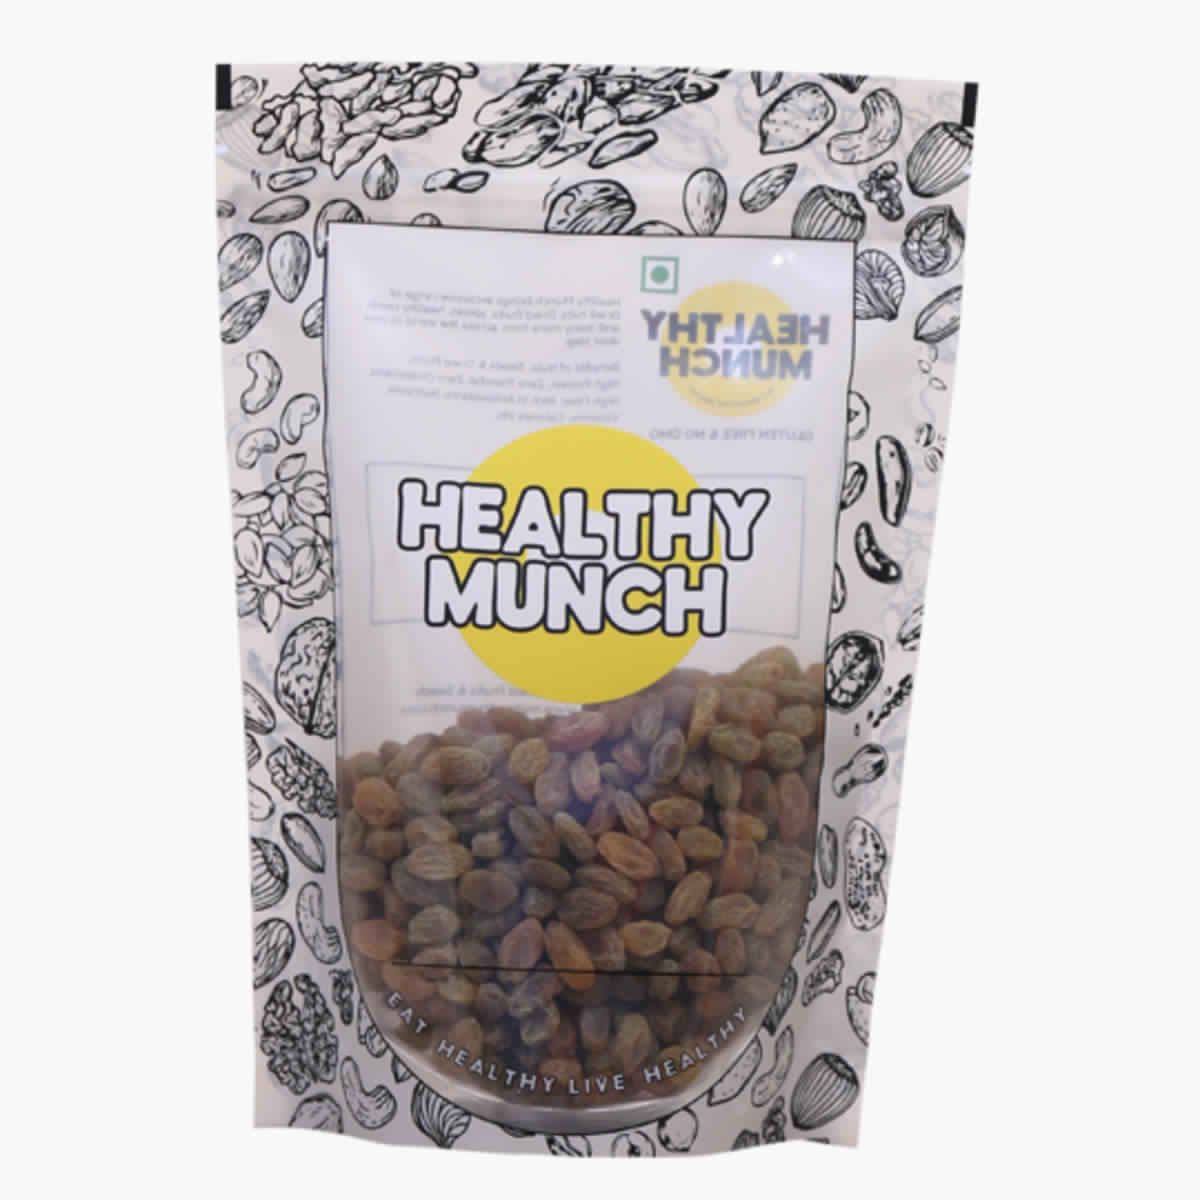 Buy Healthy Munch Premium Afghan Raisins 250 gms at Best Price Online